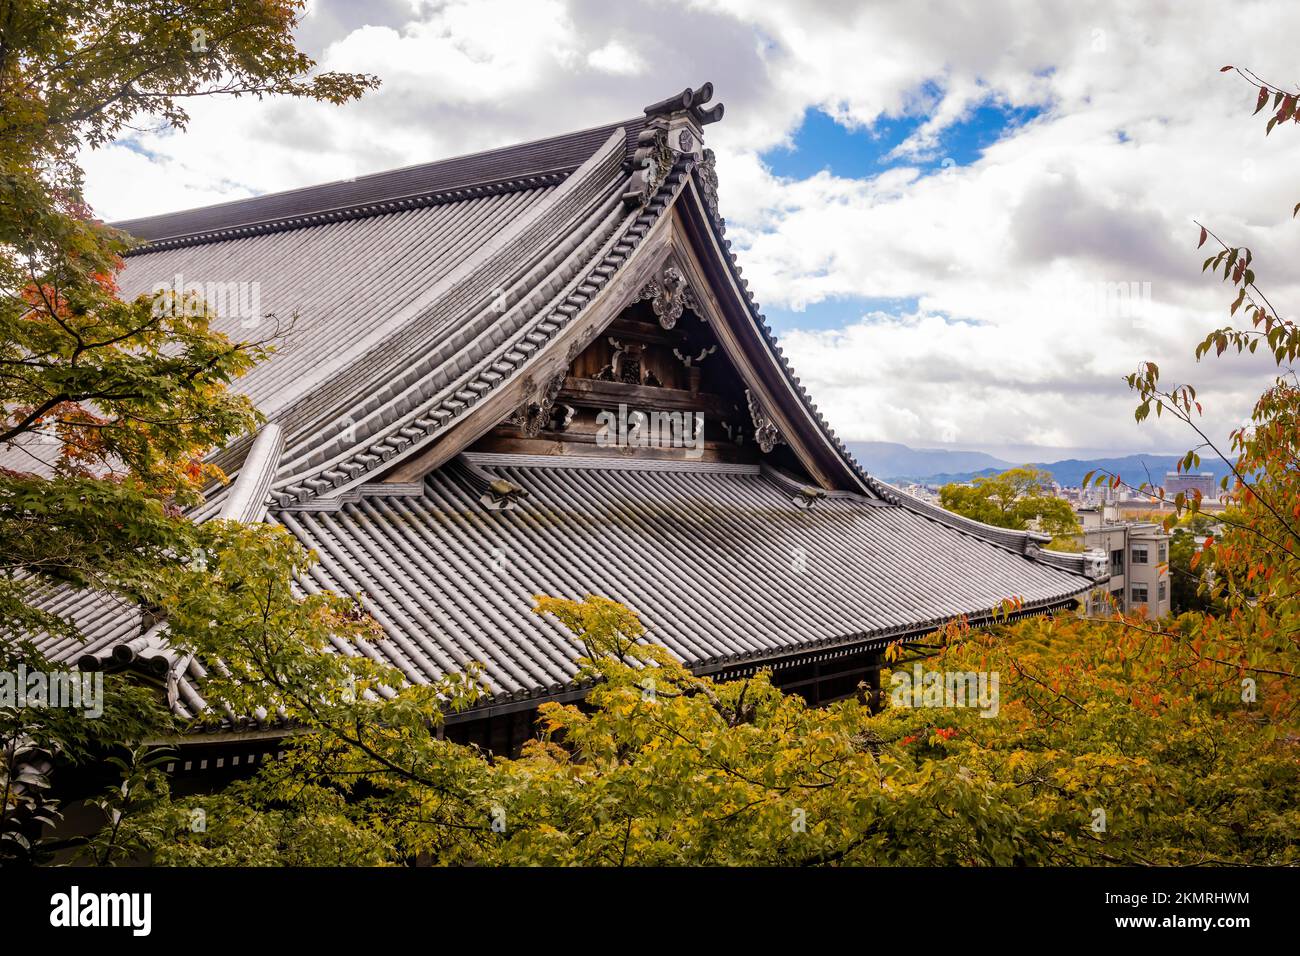 Wunderschöne Holzdachfassade des antiken Eikando Tempels in Kyoto Japan Stockfoto